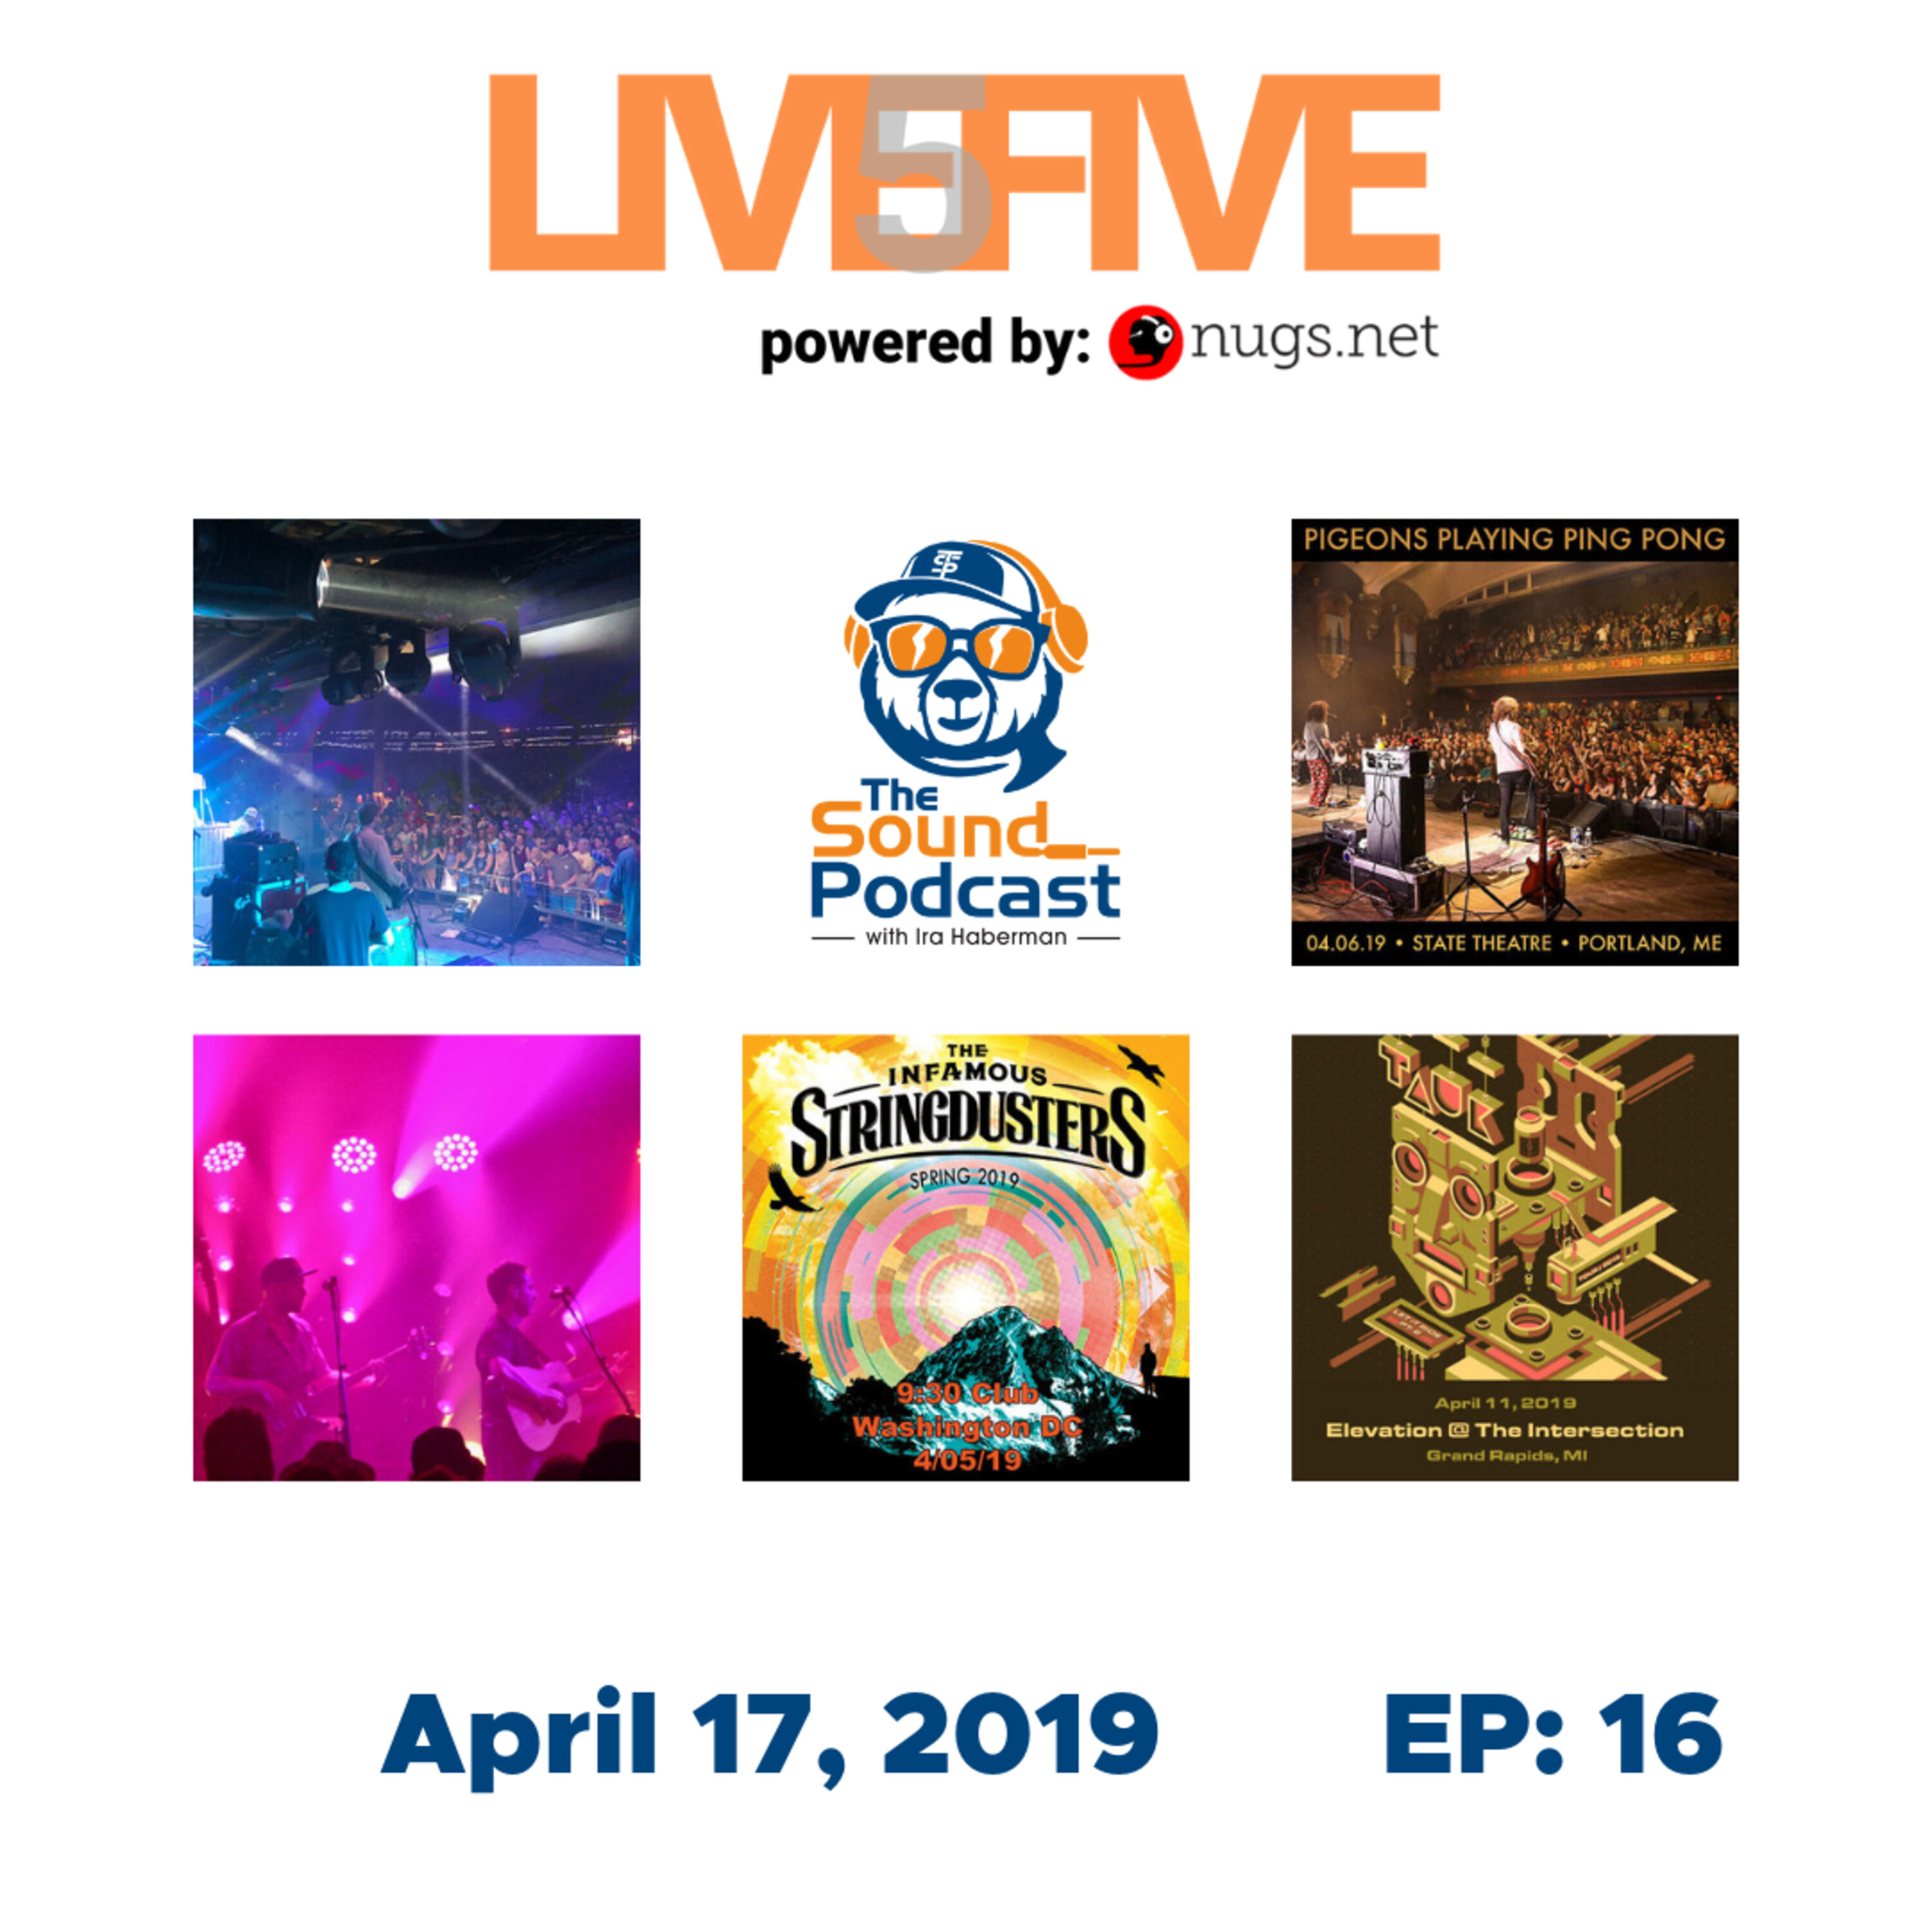 Live 5 - April 17, 2019. Image